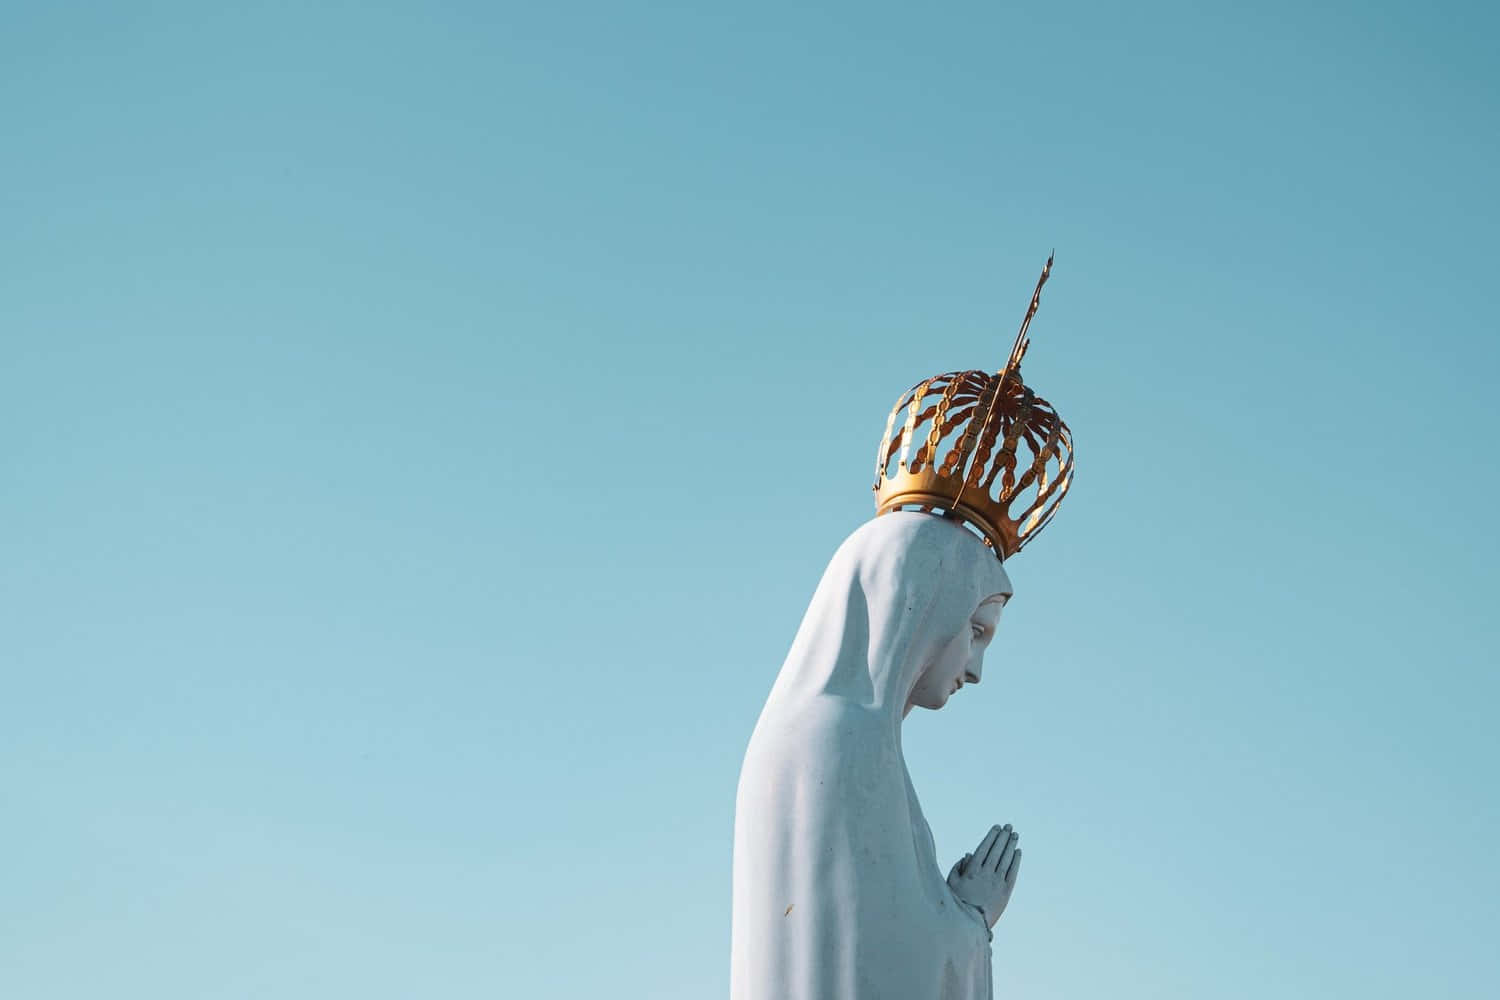 Labeata Vergine Maria.